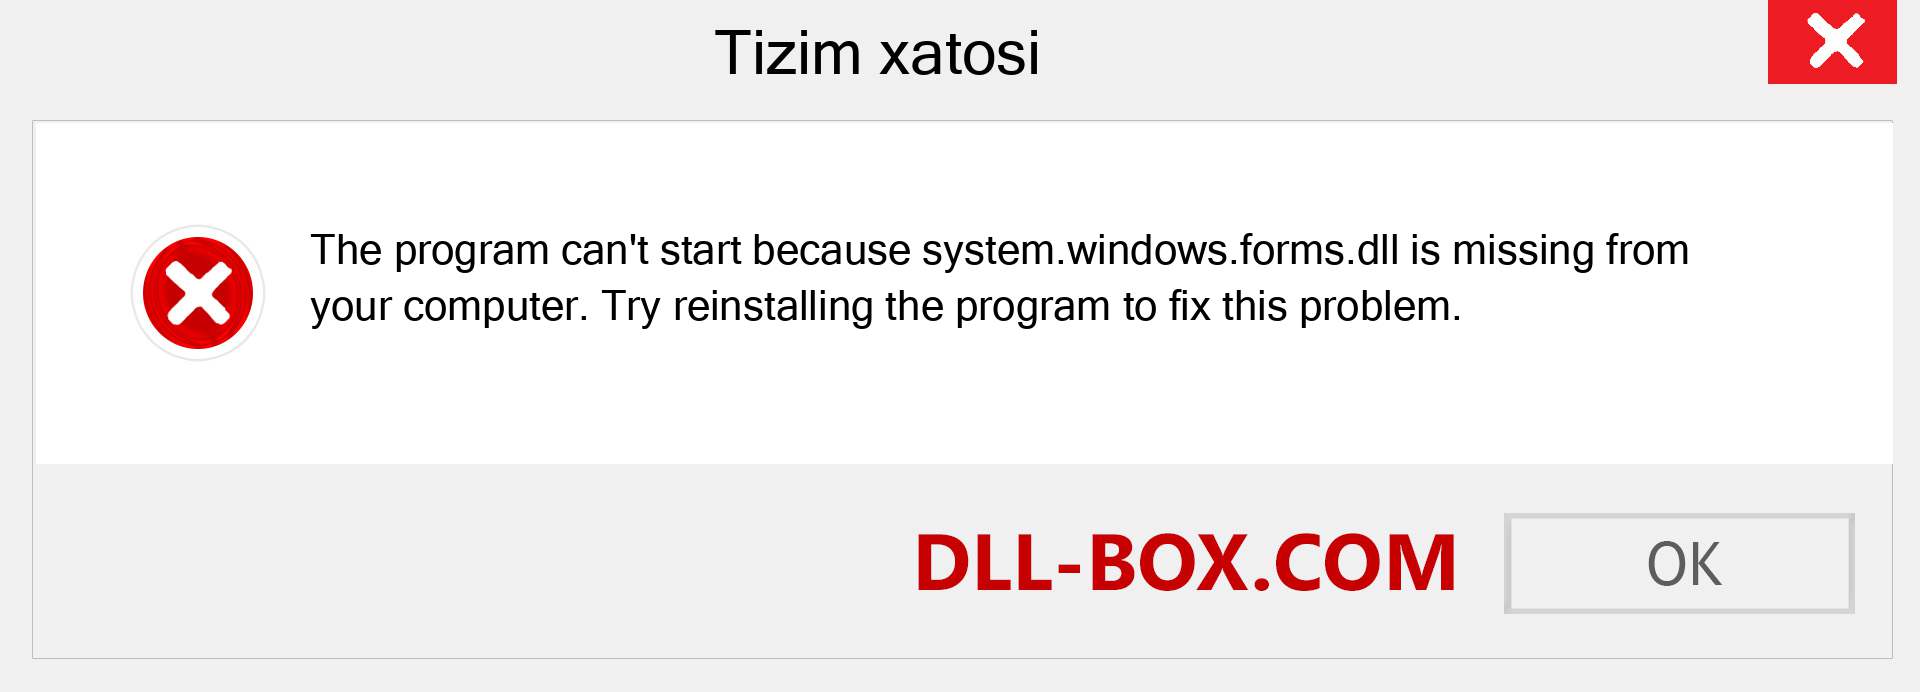 system.windows.forms.dll fayli yo'qolganmi?. Windows 7, 8, 10 uchun yuklab olish - Windowsda system.windows.forms dll etishmayotgan xatoni tuzating, rasmlar, rasmlar